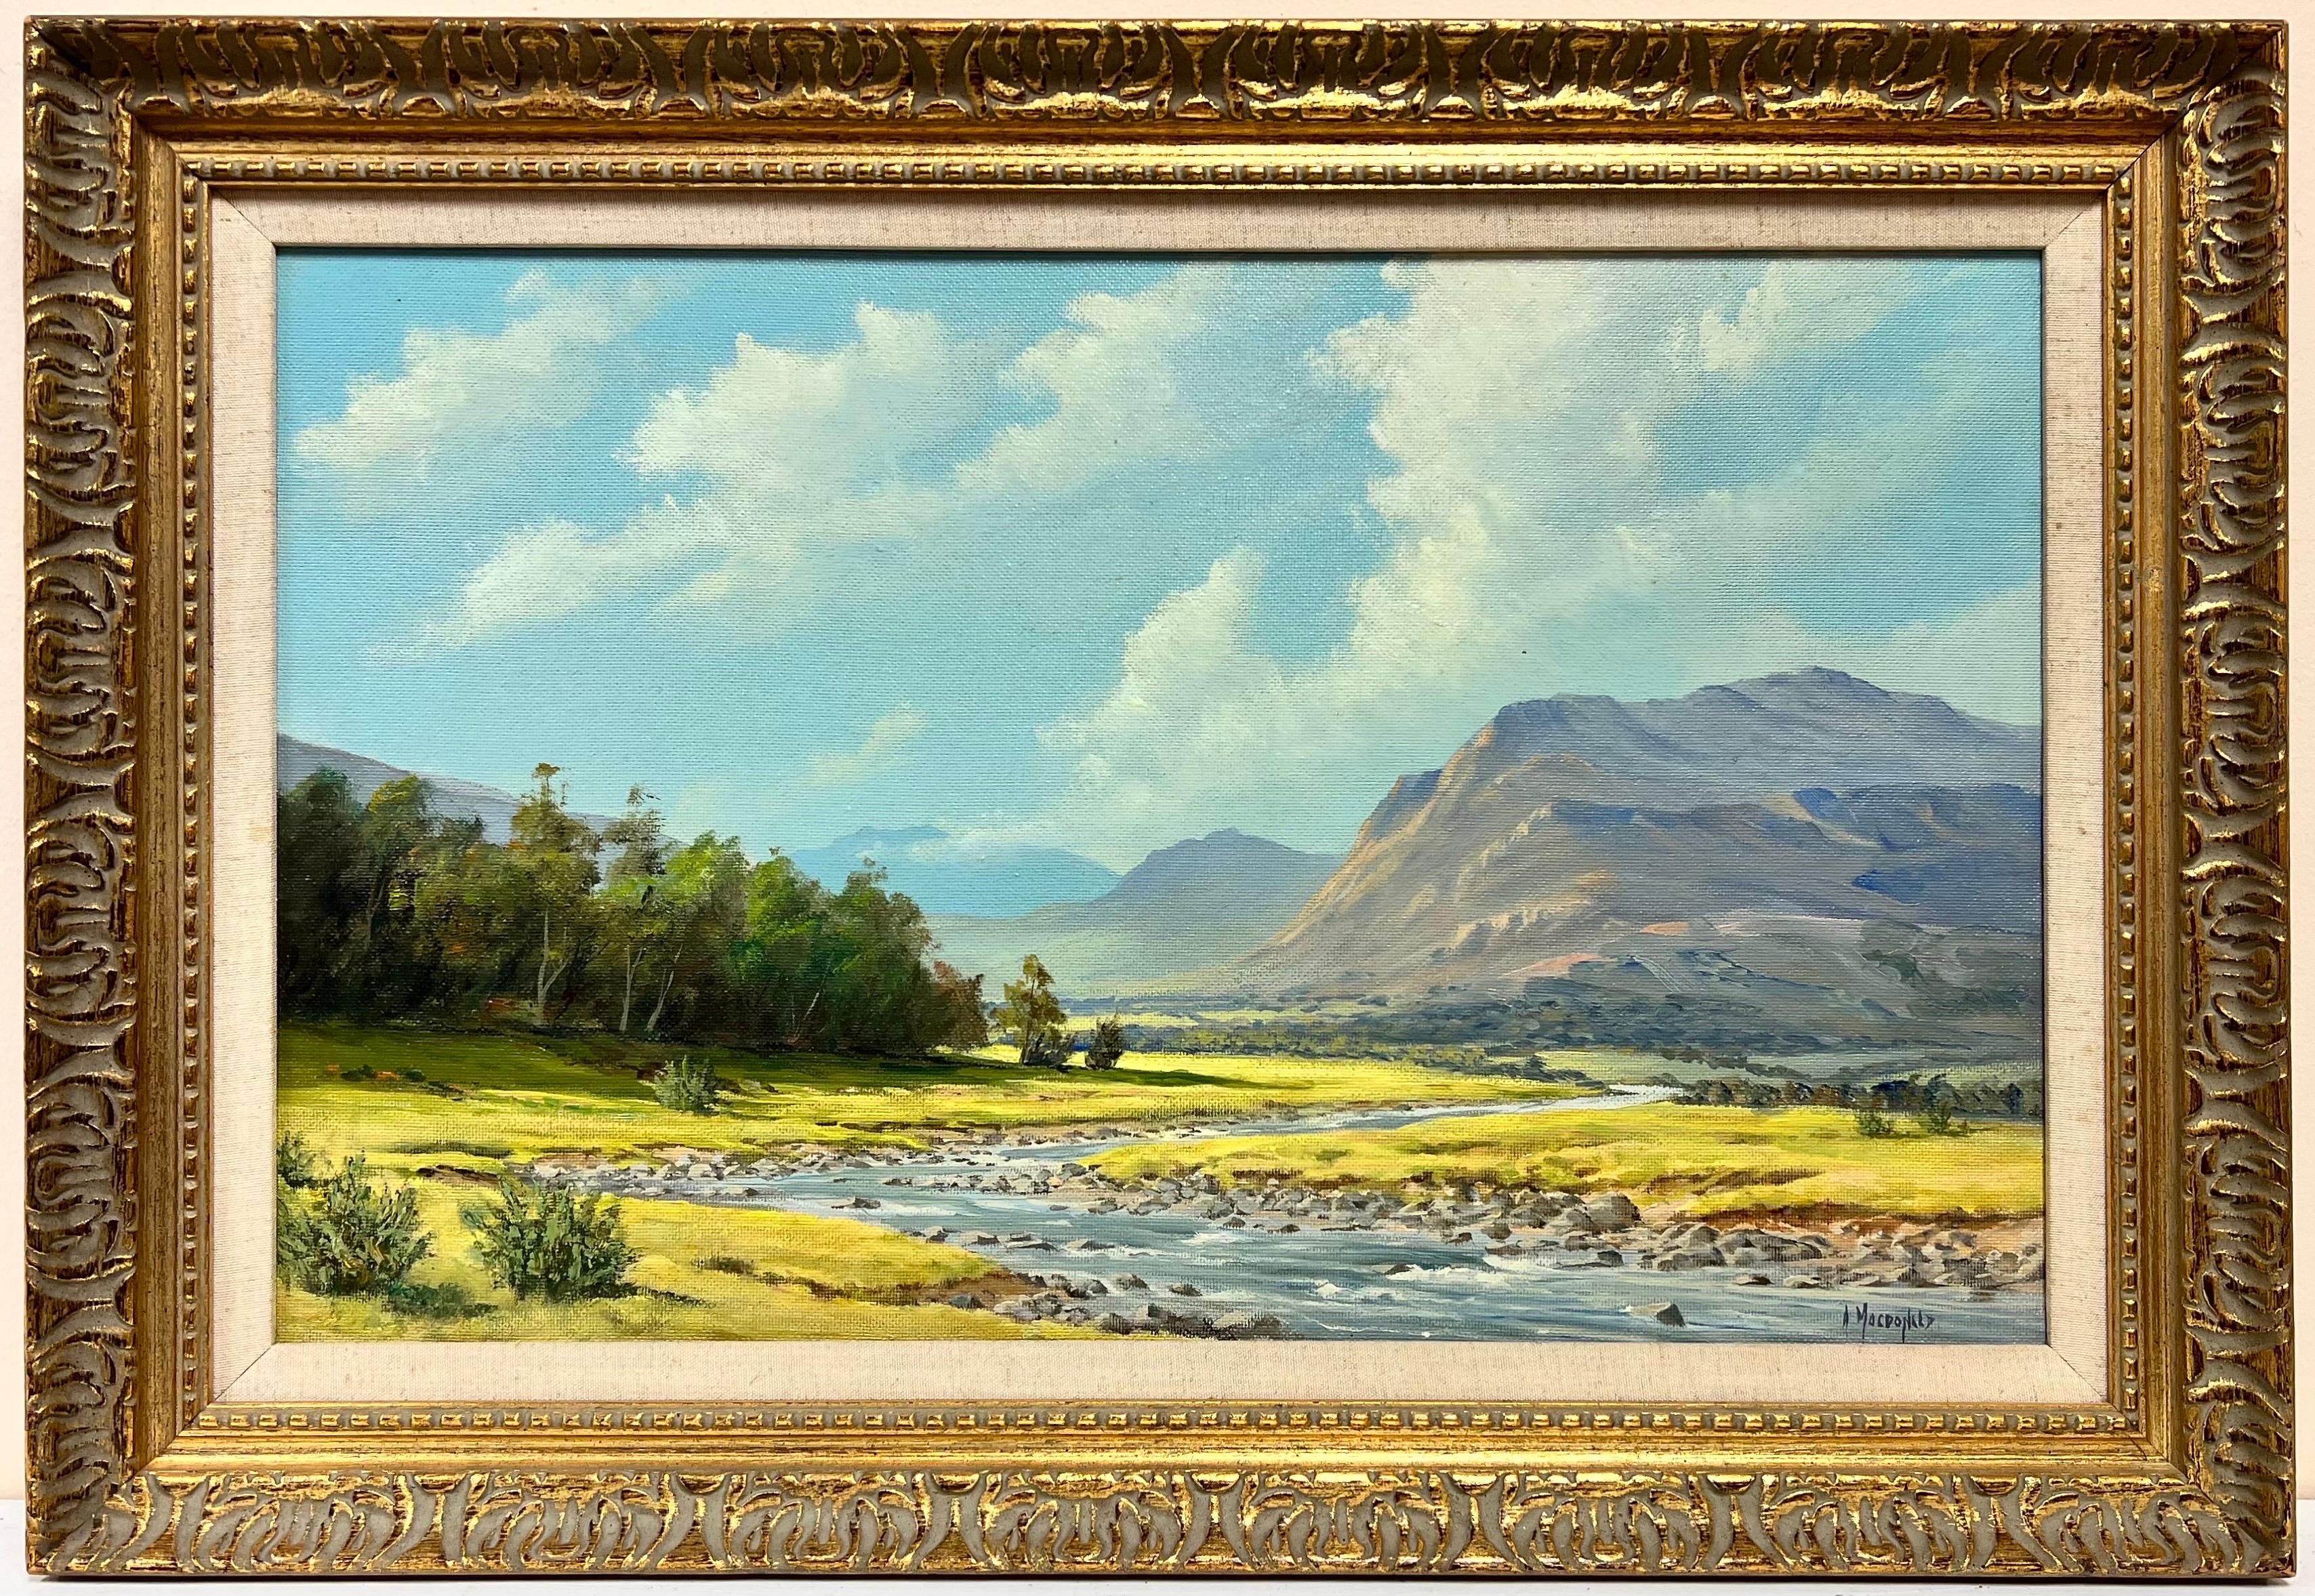 McDonald Landscape Painting - Signed Scottish Oil Sunny Highland River Landscape in Summer, framed original